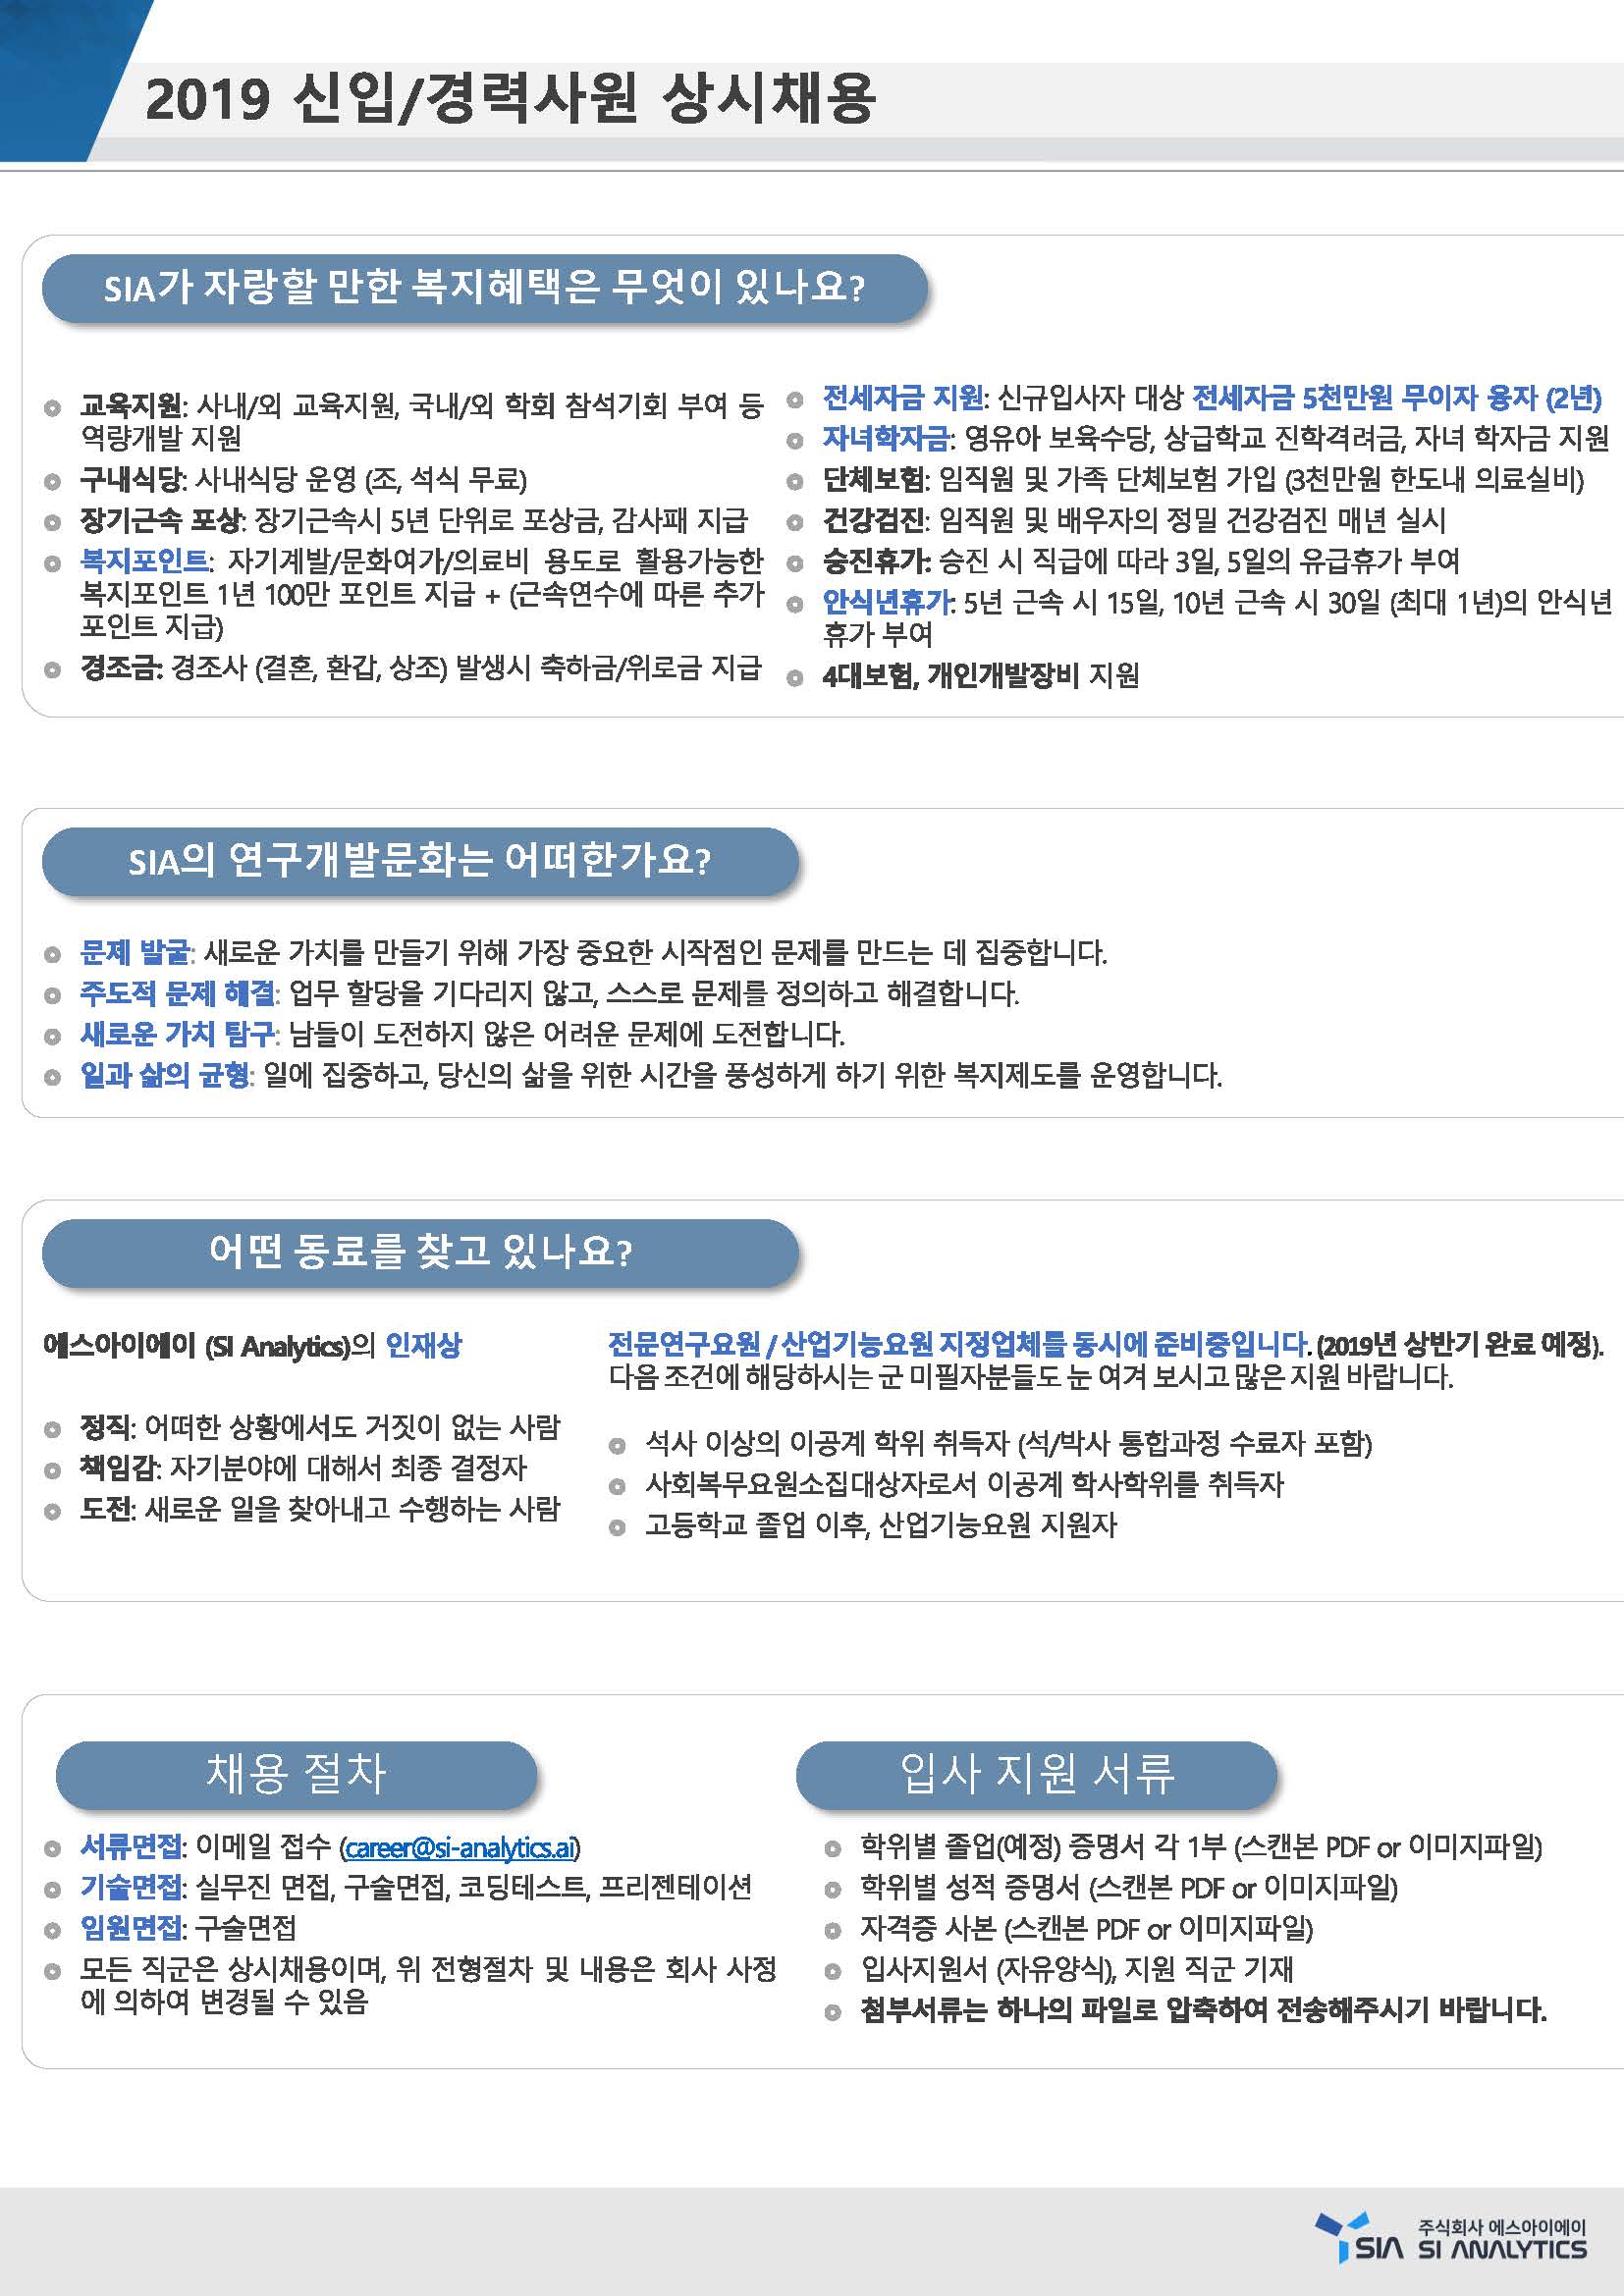 2019 신입경력사원 상시채용공고-SI Analytics_페이지_3.jpg